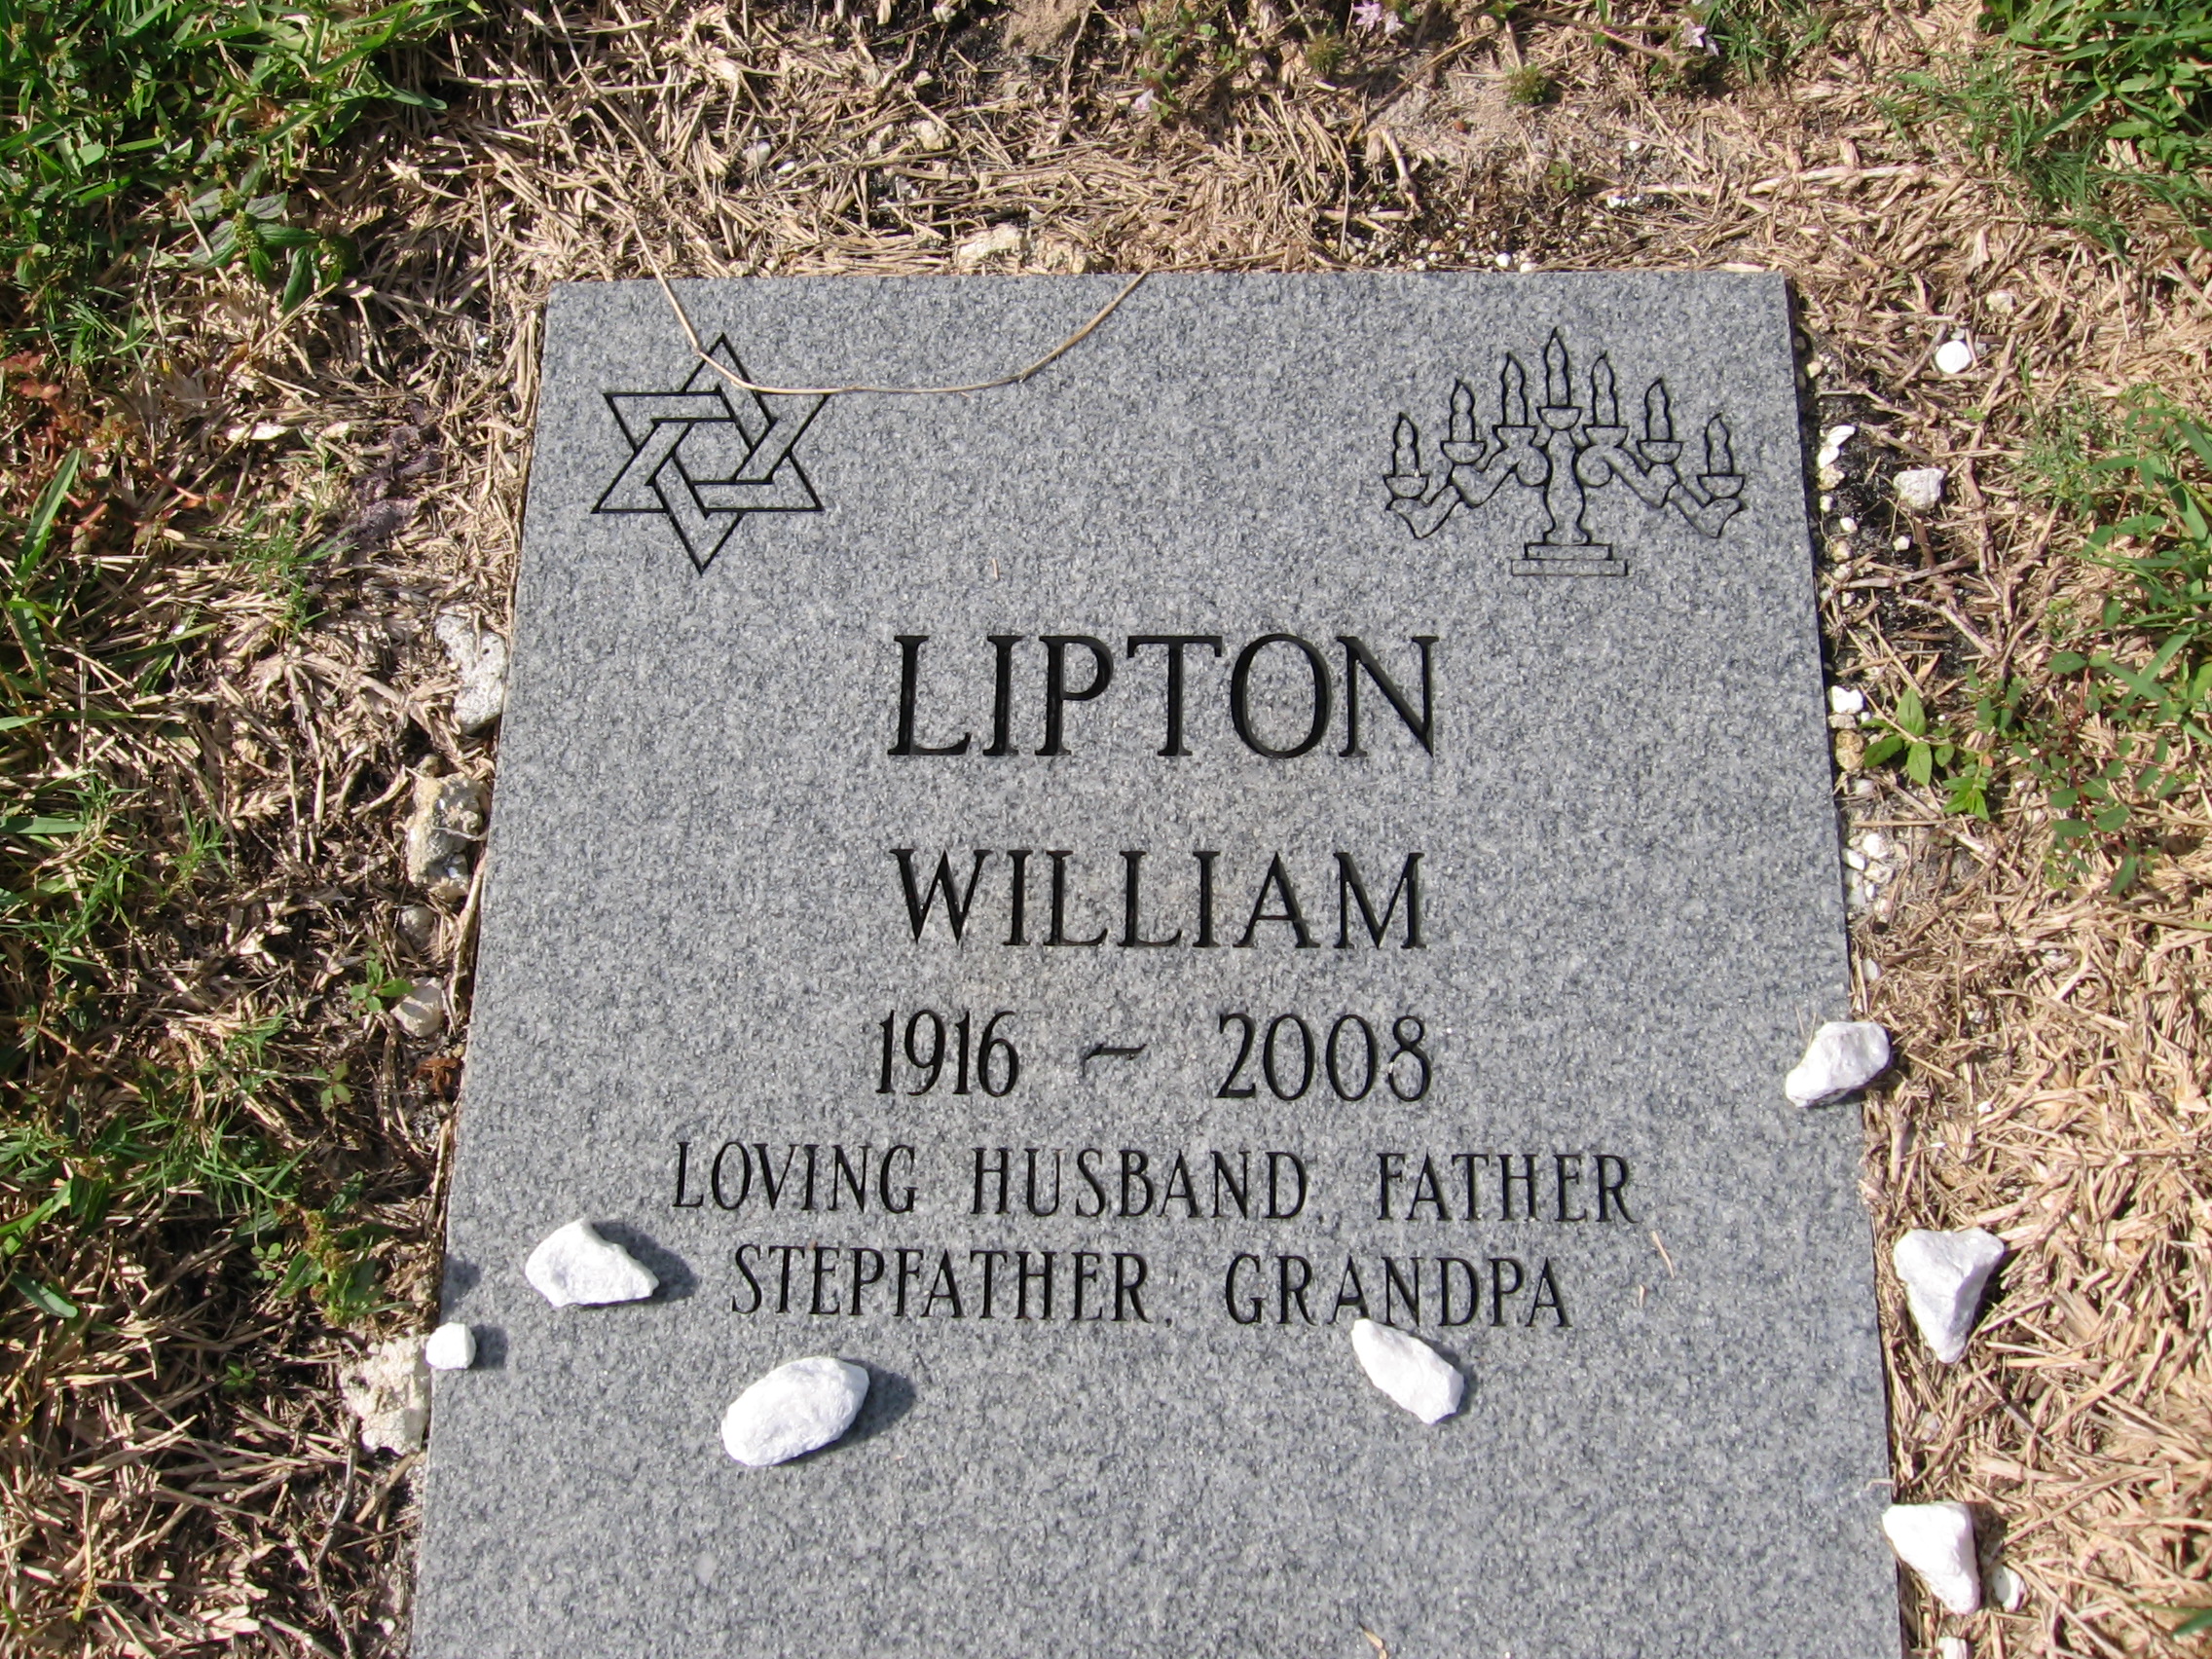 William Lipton